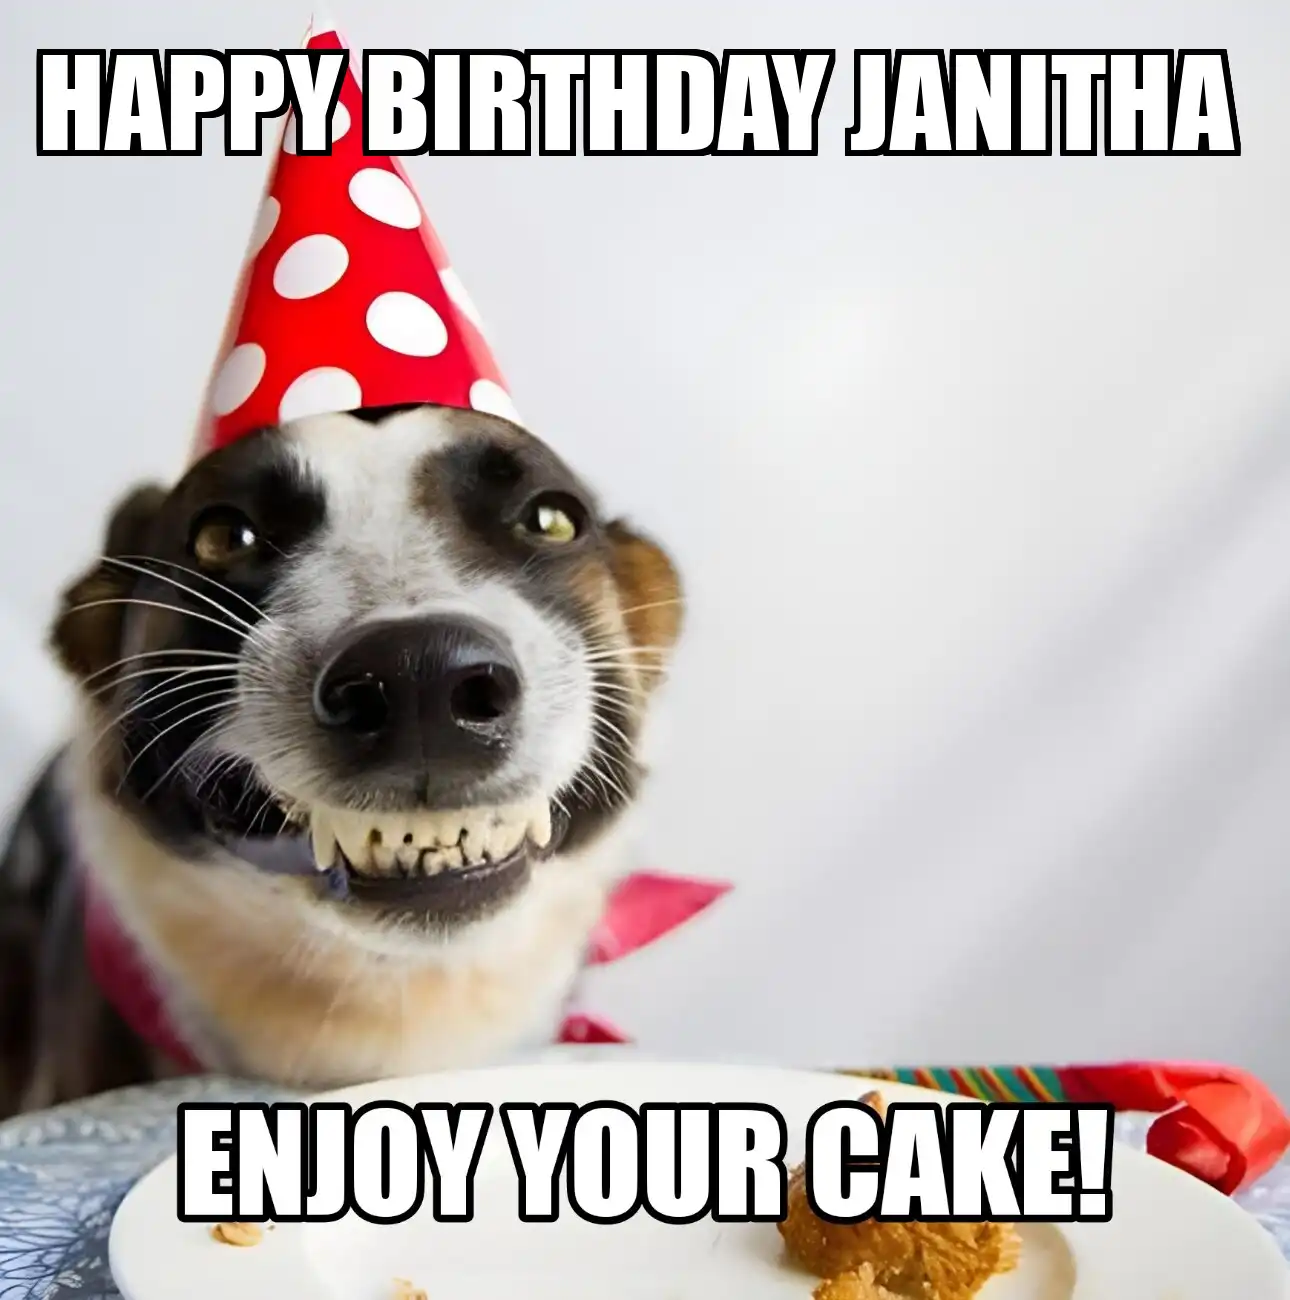 Happy Birthday Janitha Enjoy Your Cake Dog Meme